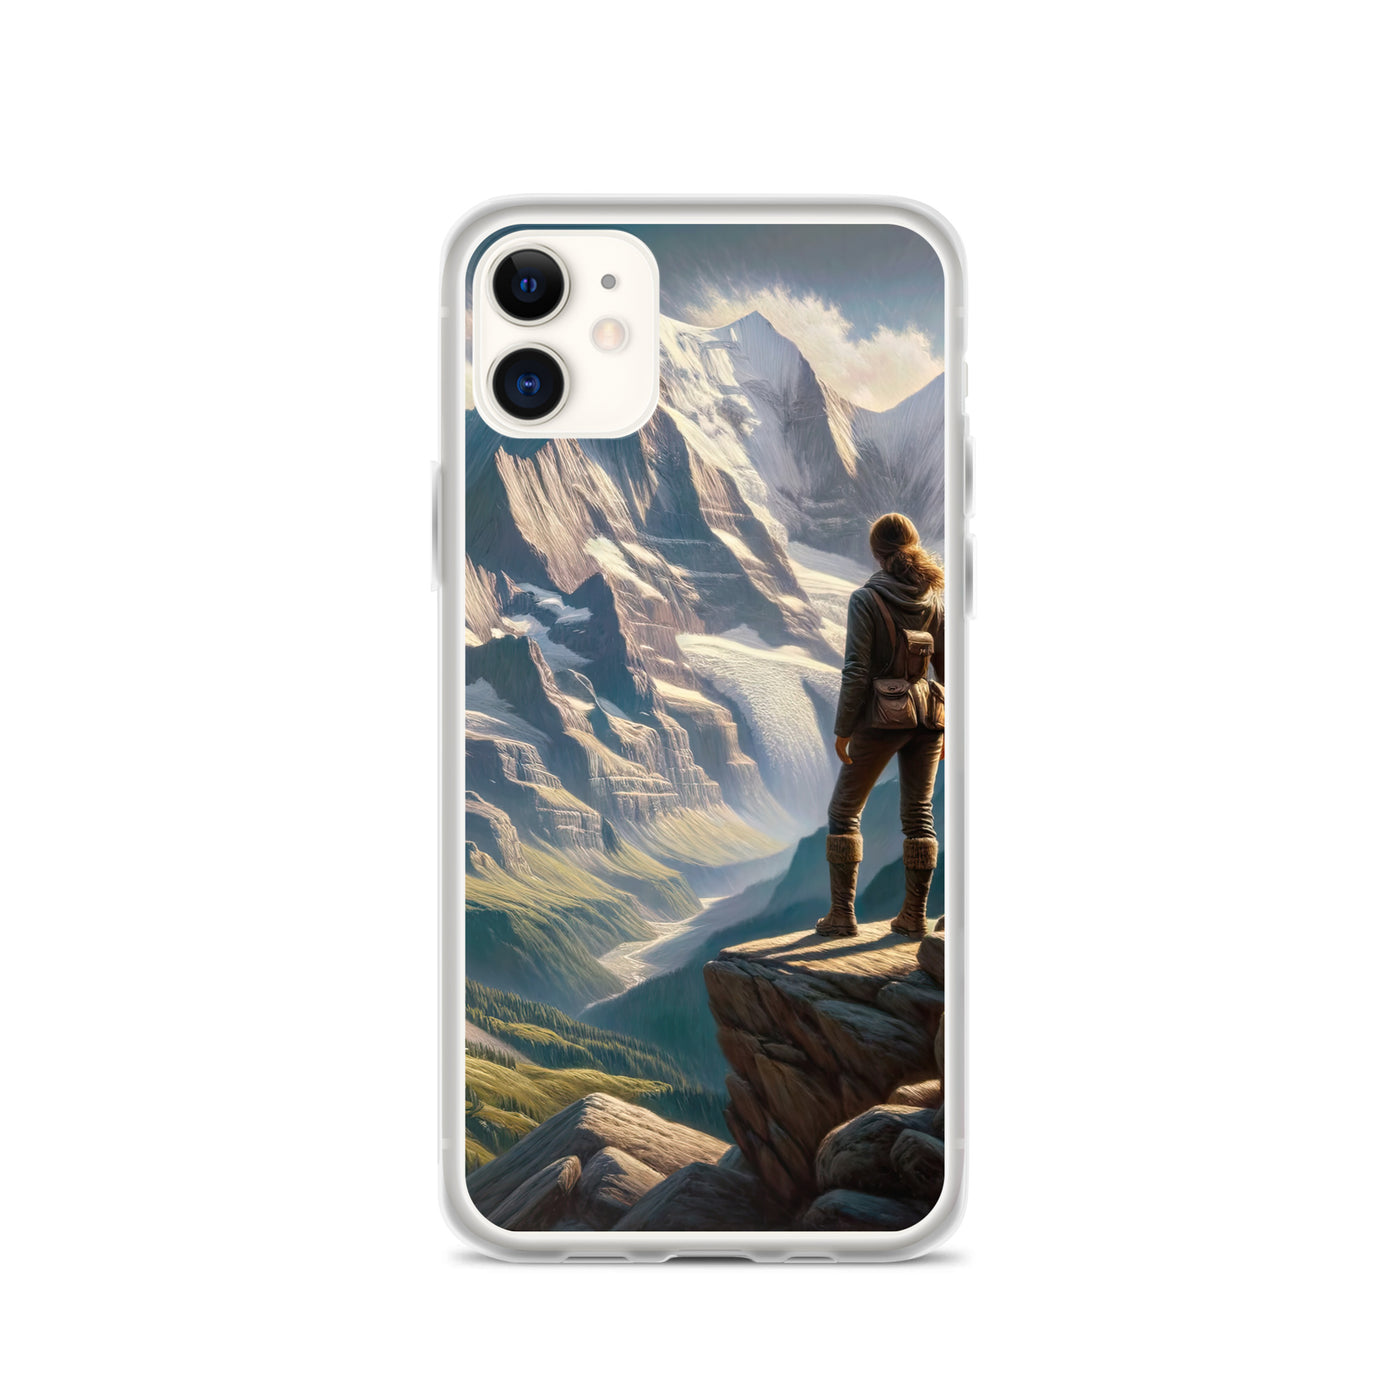 Ölgemälde der Alpengipfel mit Schweizer Abenteurerin auf Felsvorsprung - iPhone Schutzhülle (durchsichtig) wandern xxx yyy zzz iPhone 11